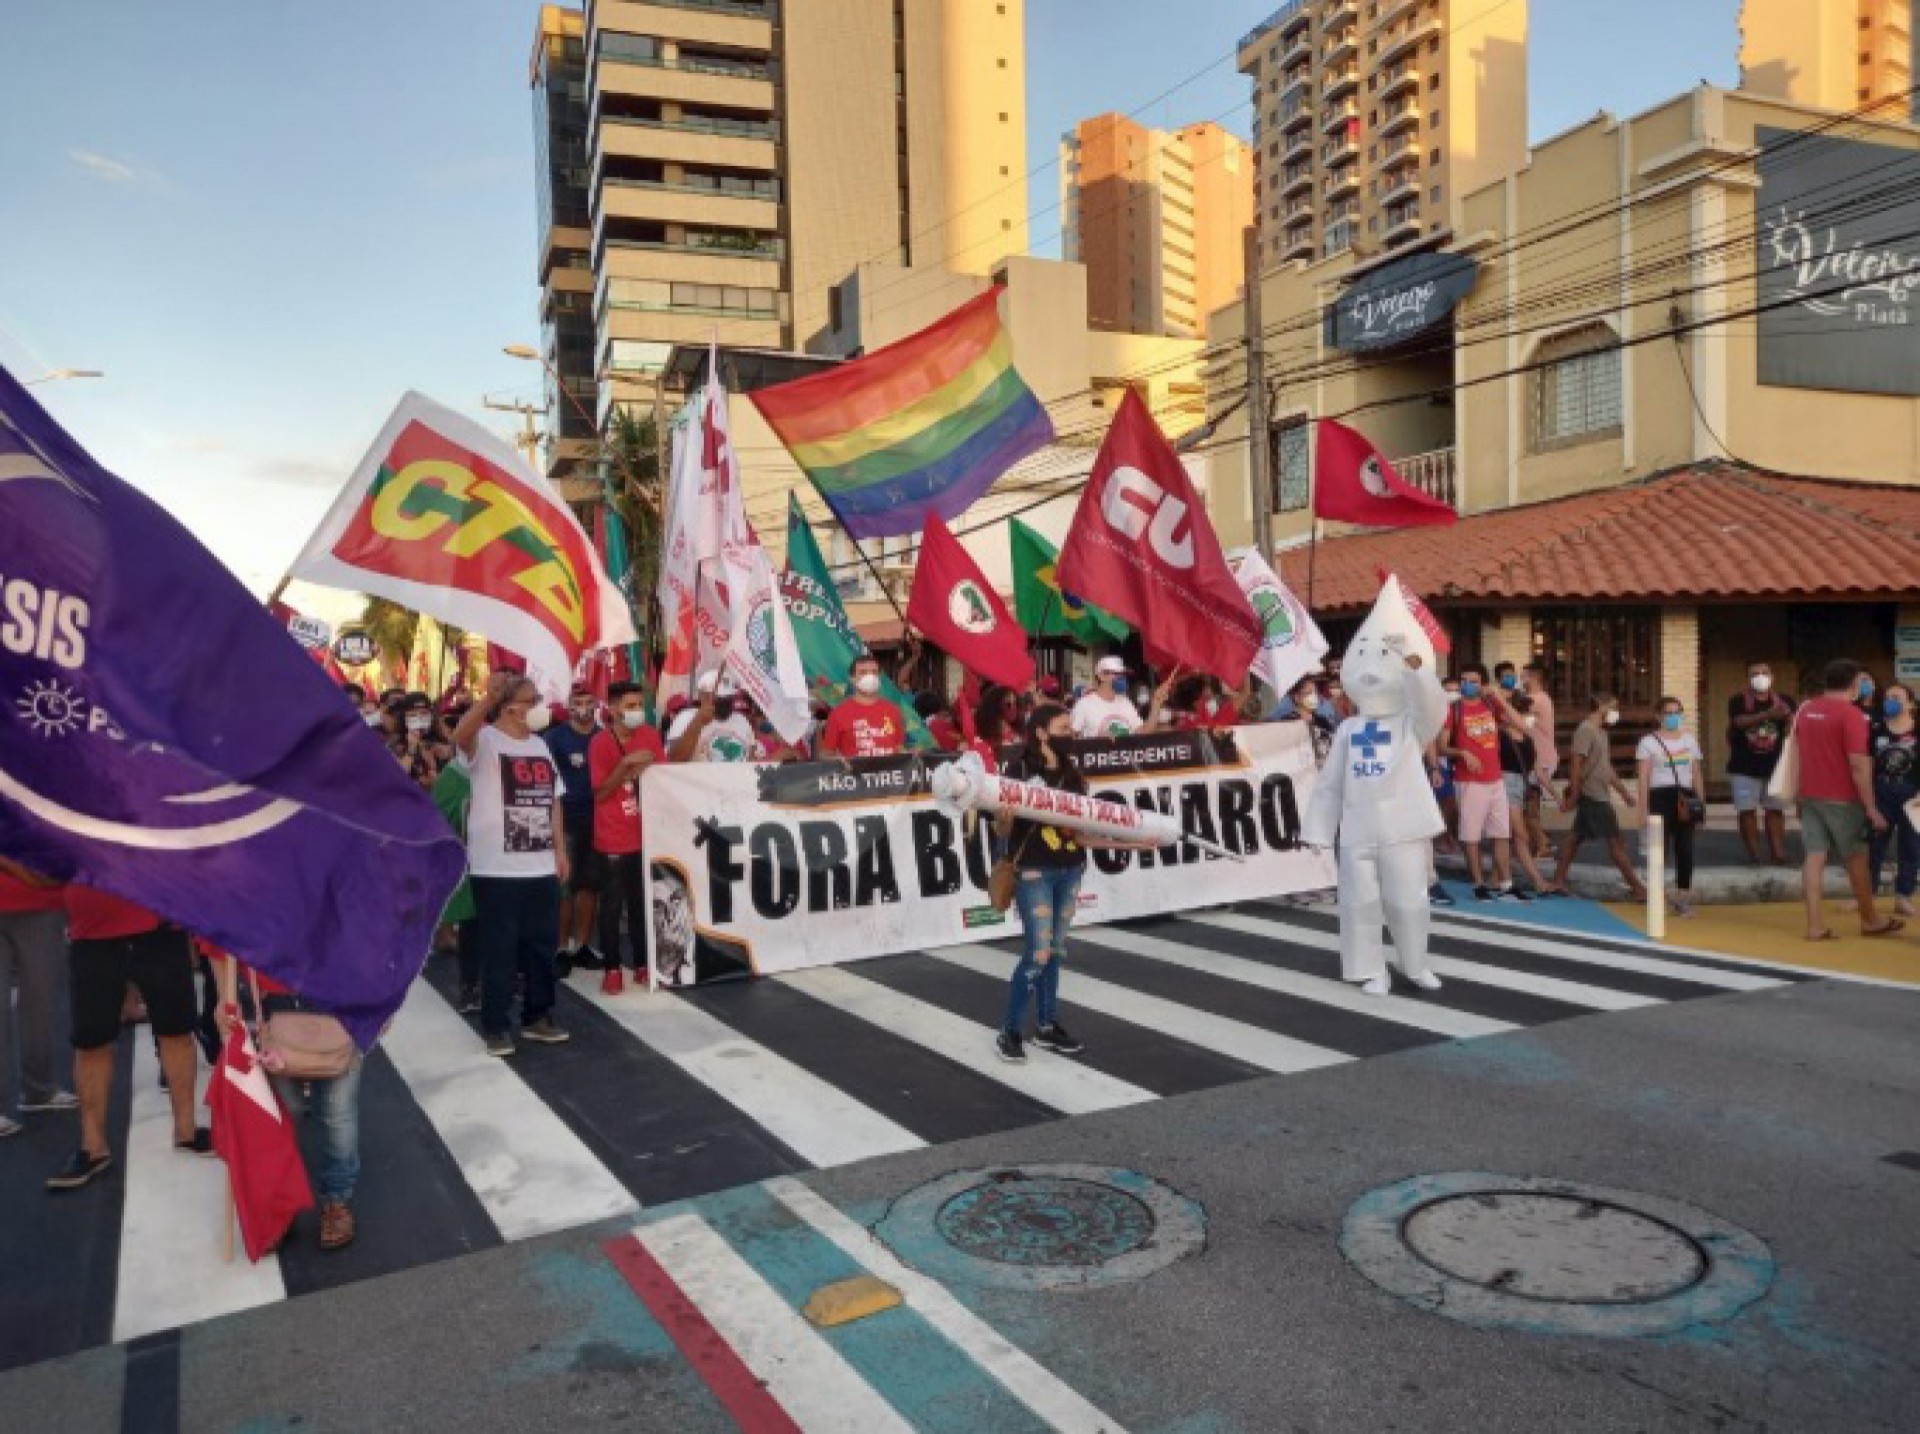 Manifestantes pedem saída de Bolsonaro e vacinas contra Covid-19